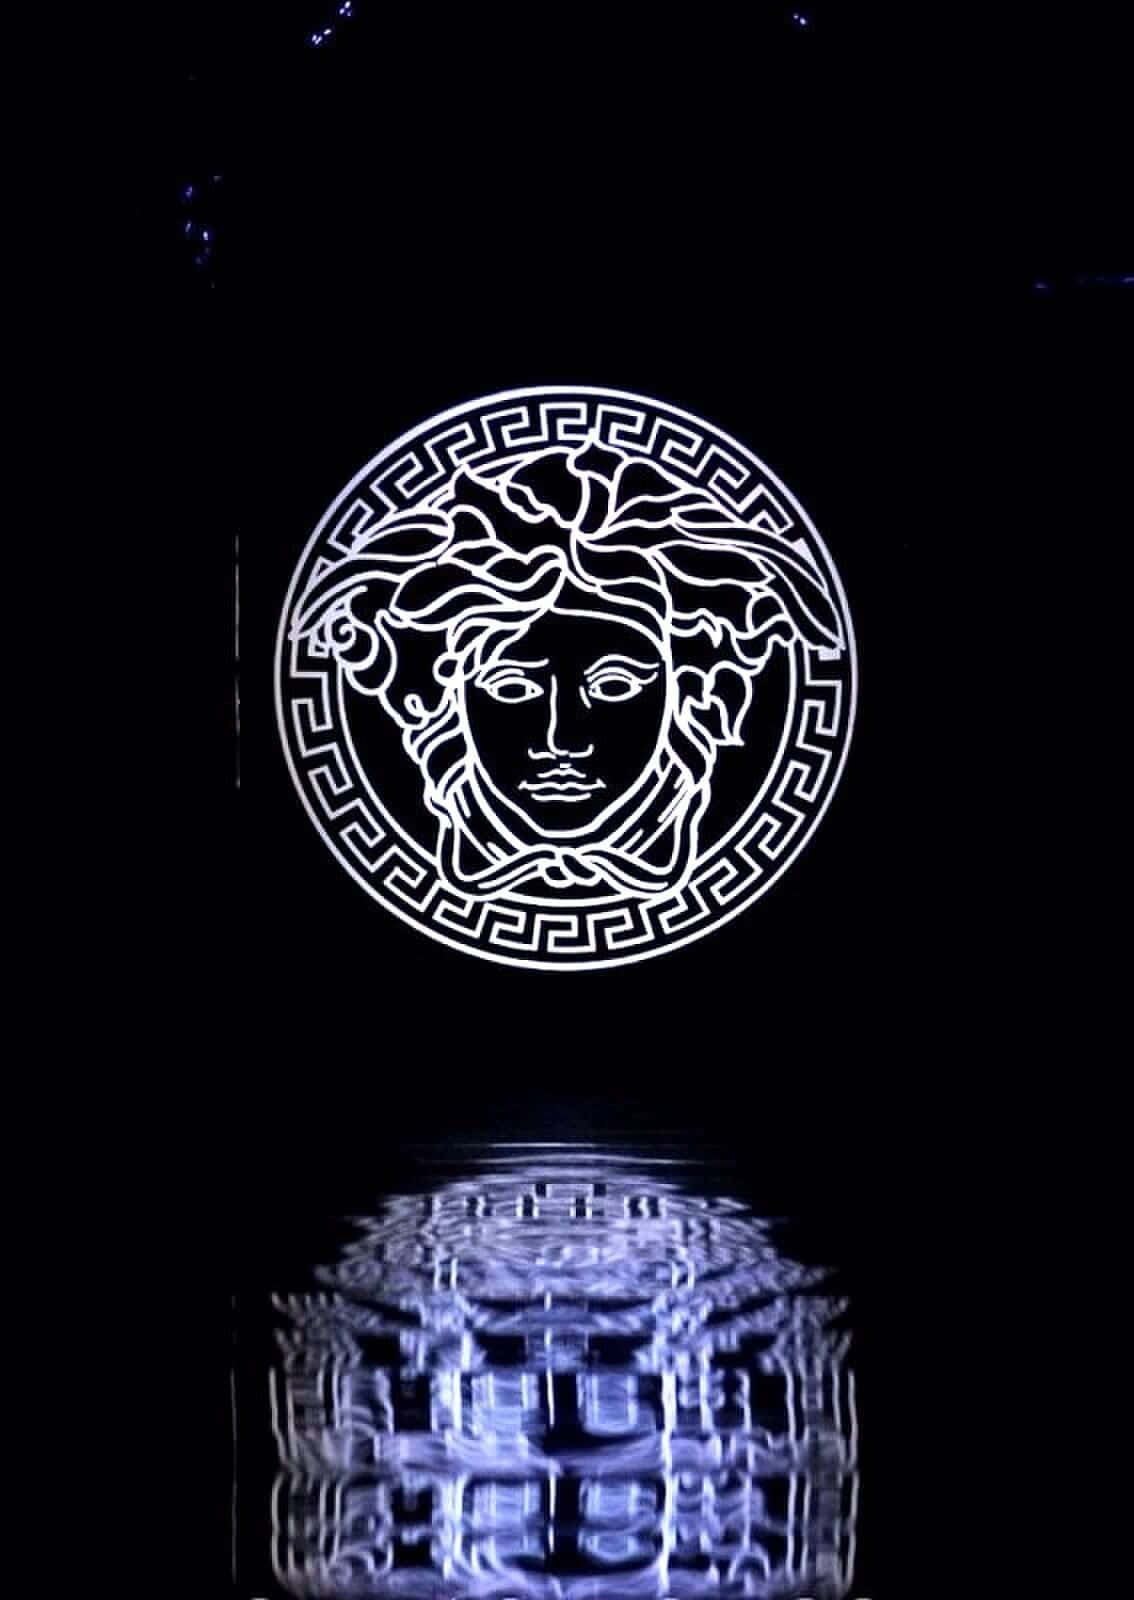 Logode Versace Con Reflejo De Agua Para Iphone. Fondo de pantalla